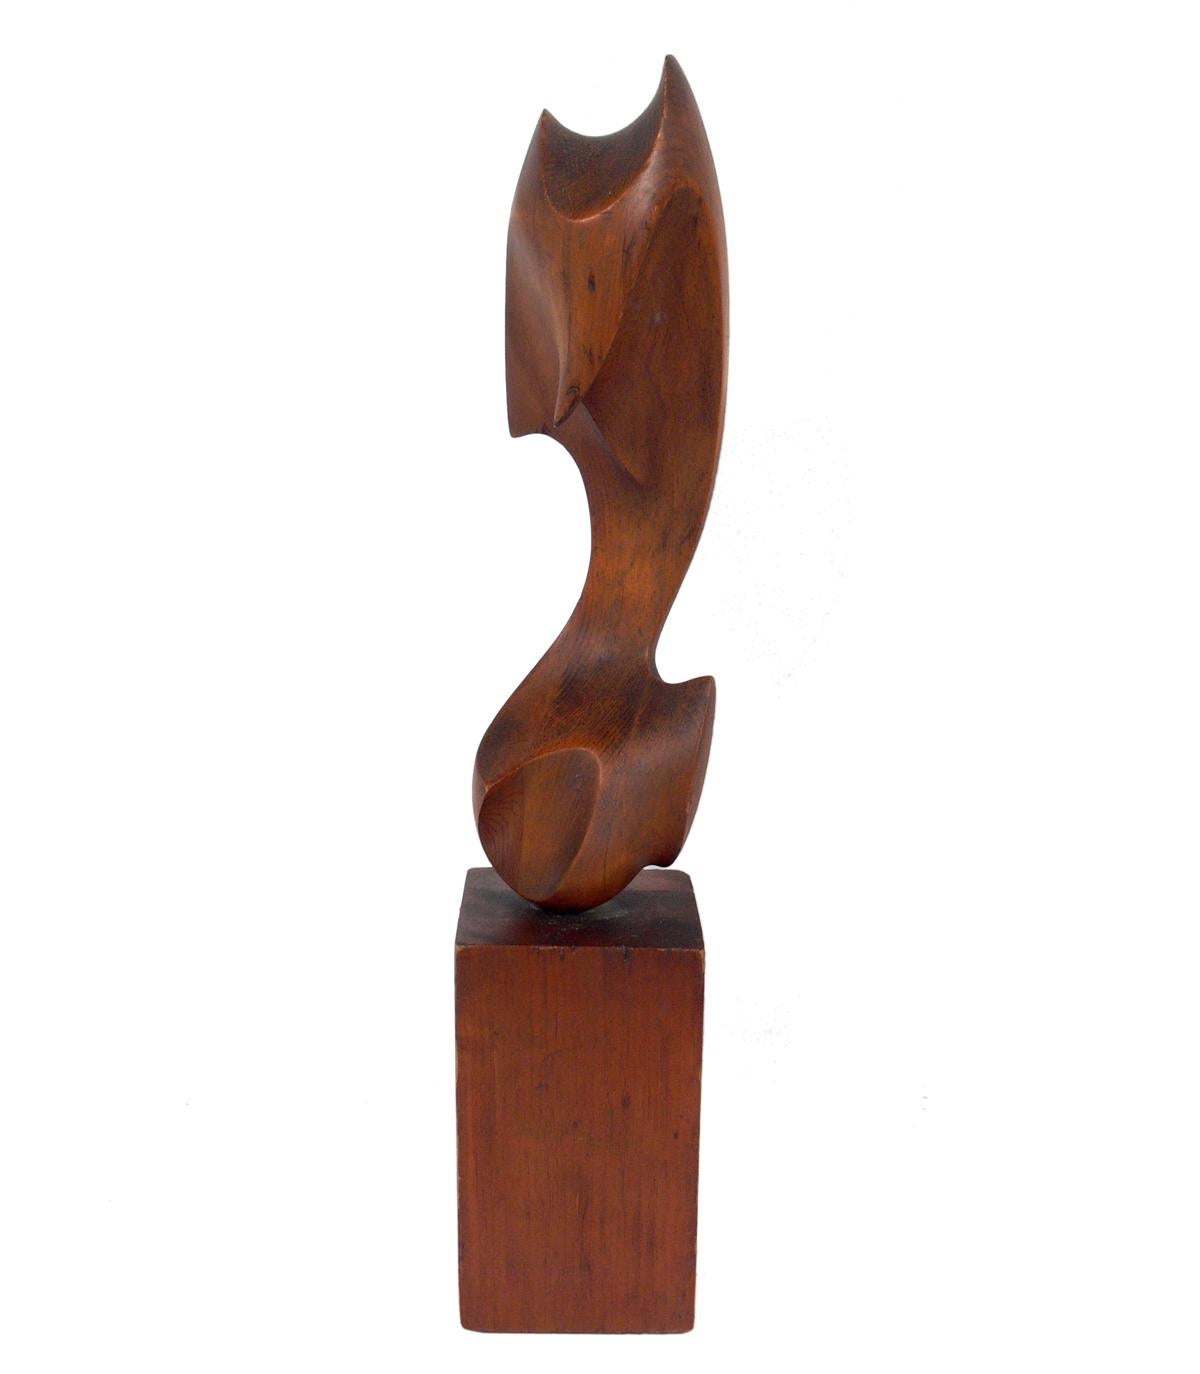 Sélection de grandes sculptures abstraites en bois, vers les années 1960. De gauche à droite, les sculptures mesurent 25,5 